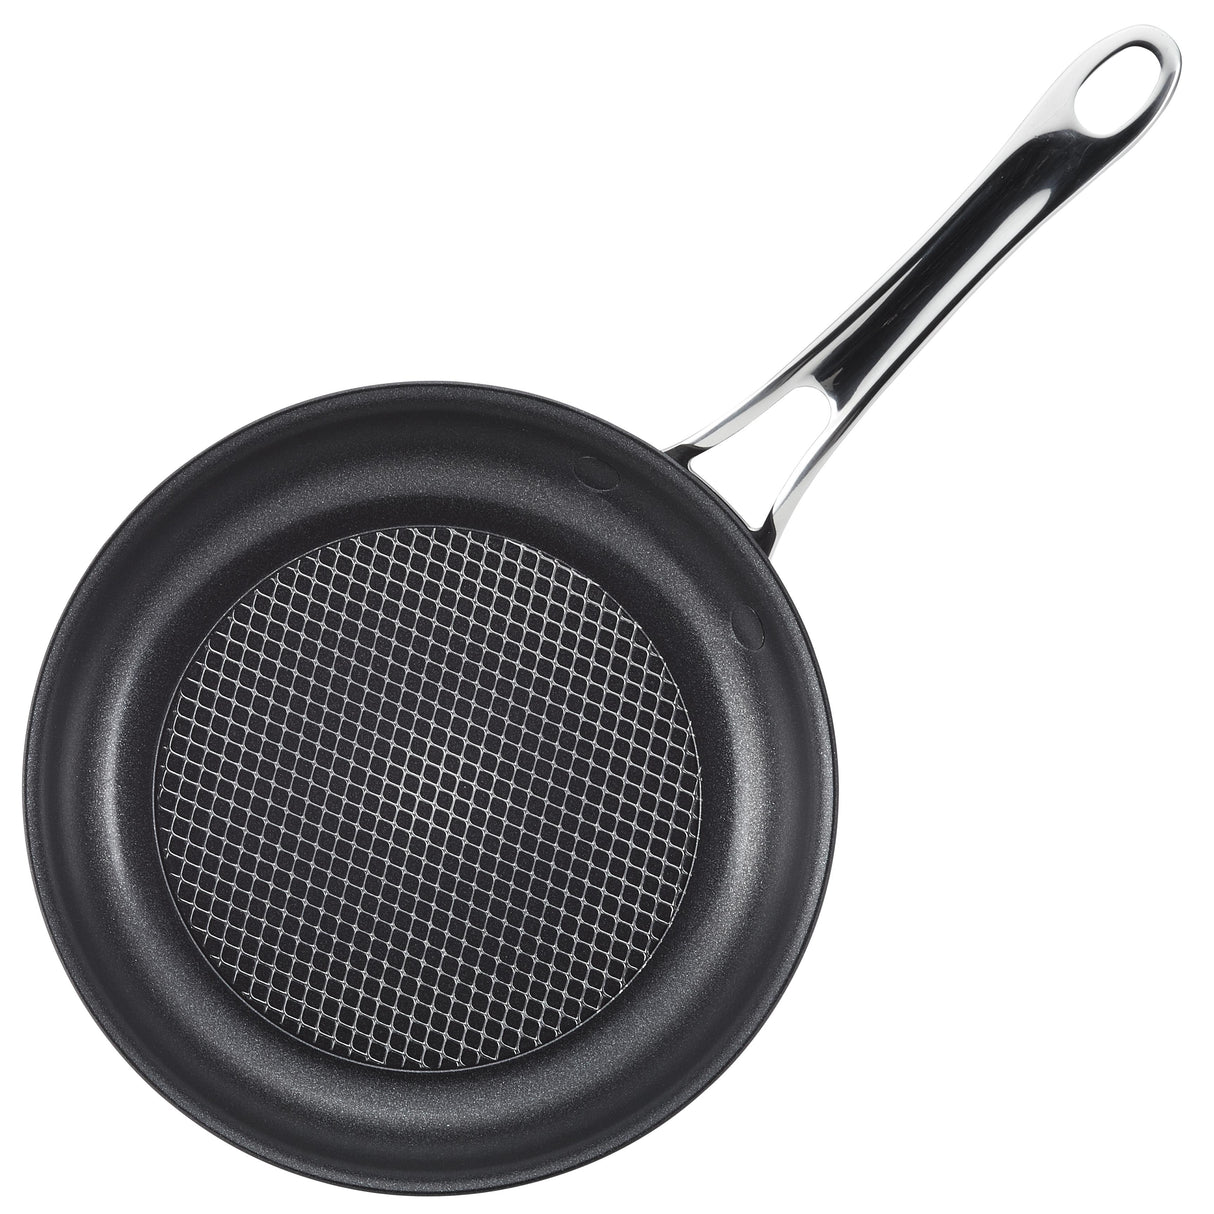 Anolon X SearTech Non Stick Frying Pan Set